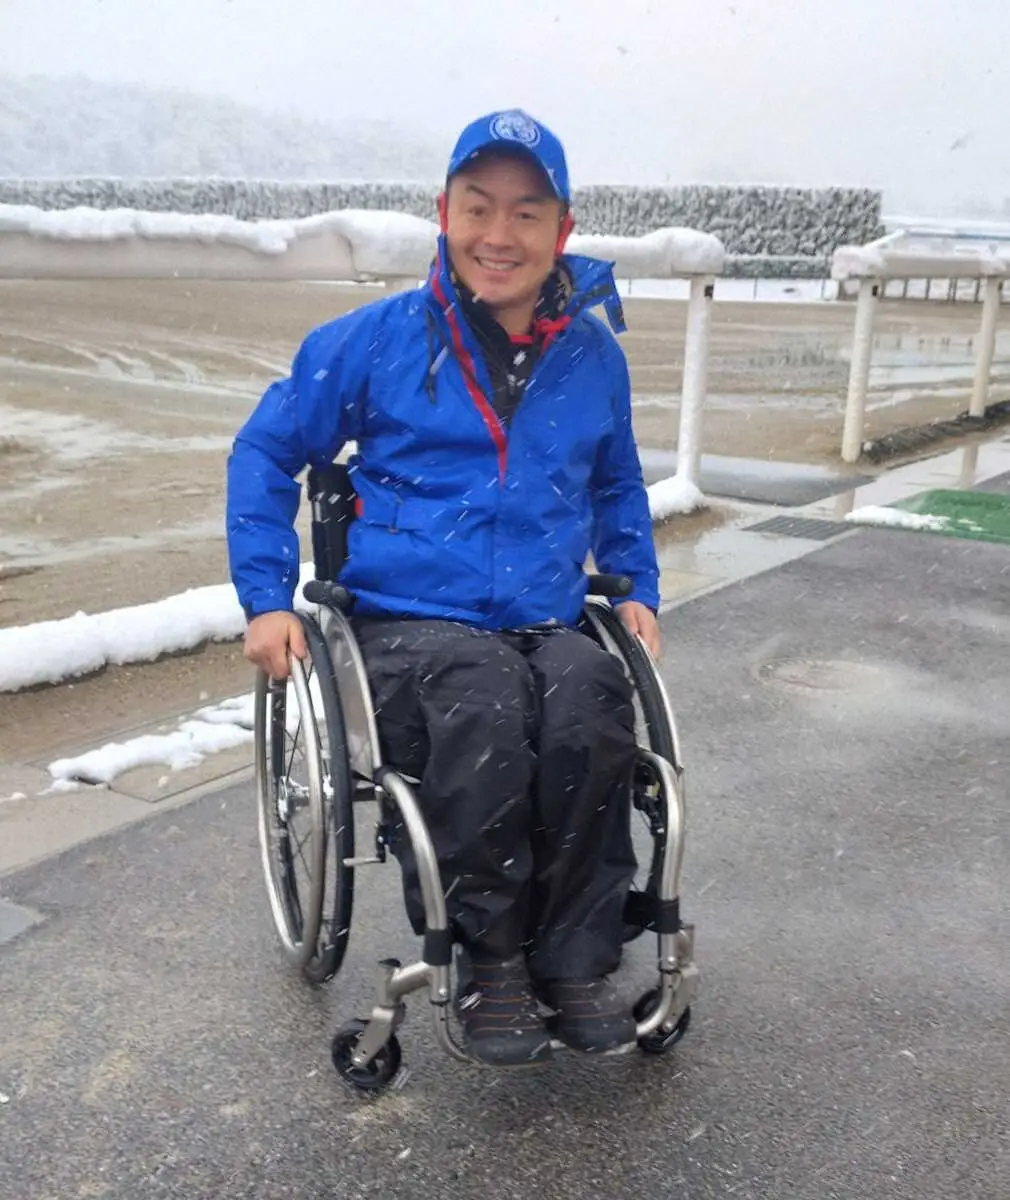 22年春の落馬負傷で休養中の藤井勘一郎、復帰かなわず引退「これからもチャレンジ精神を忘れず」